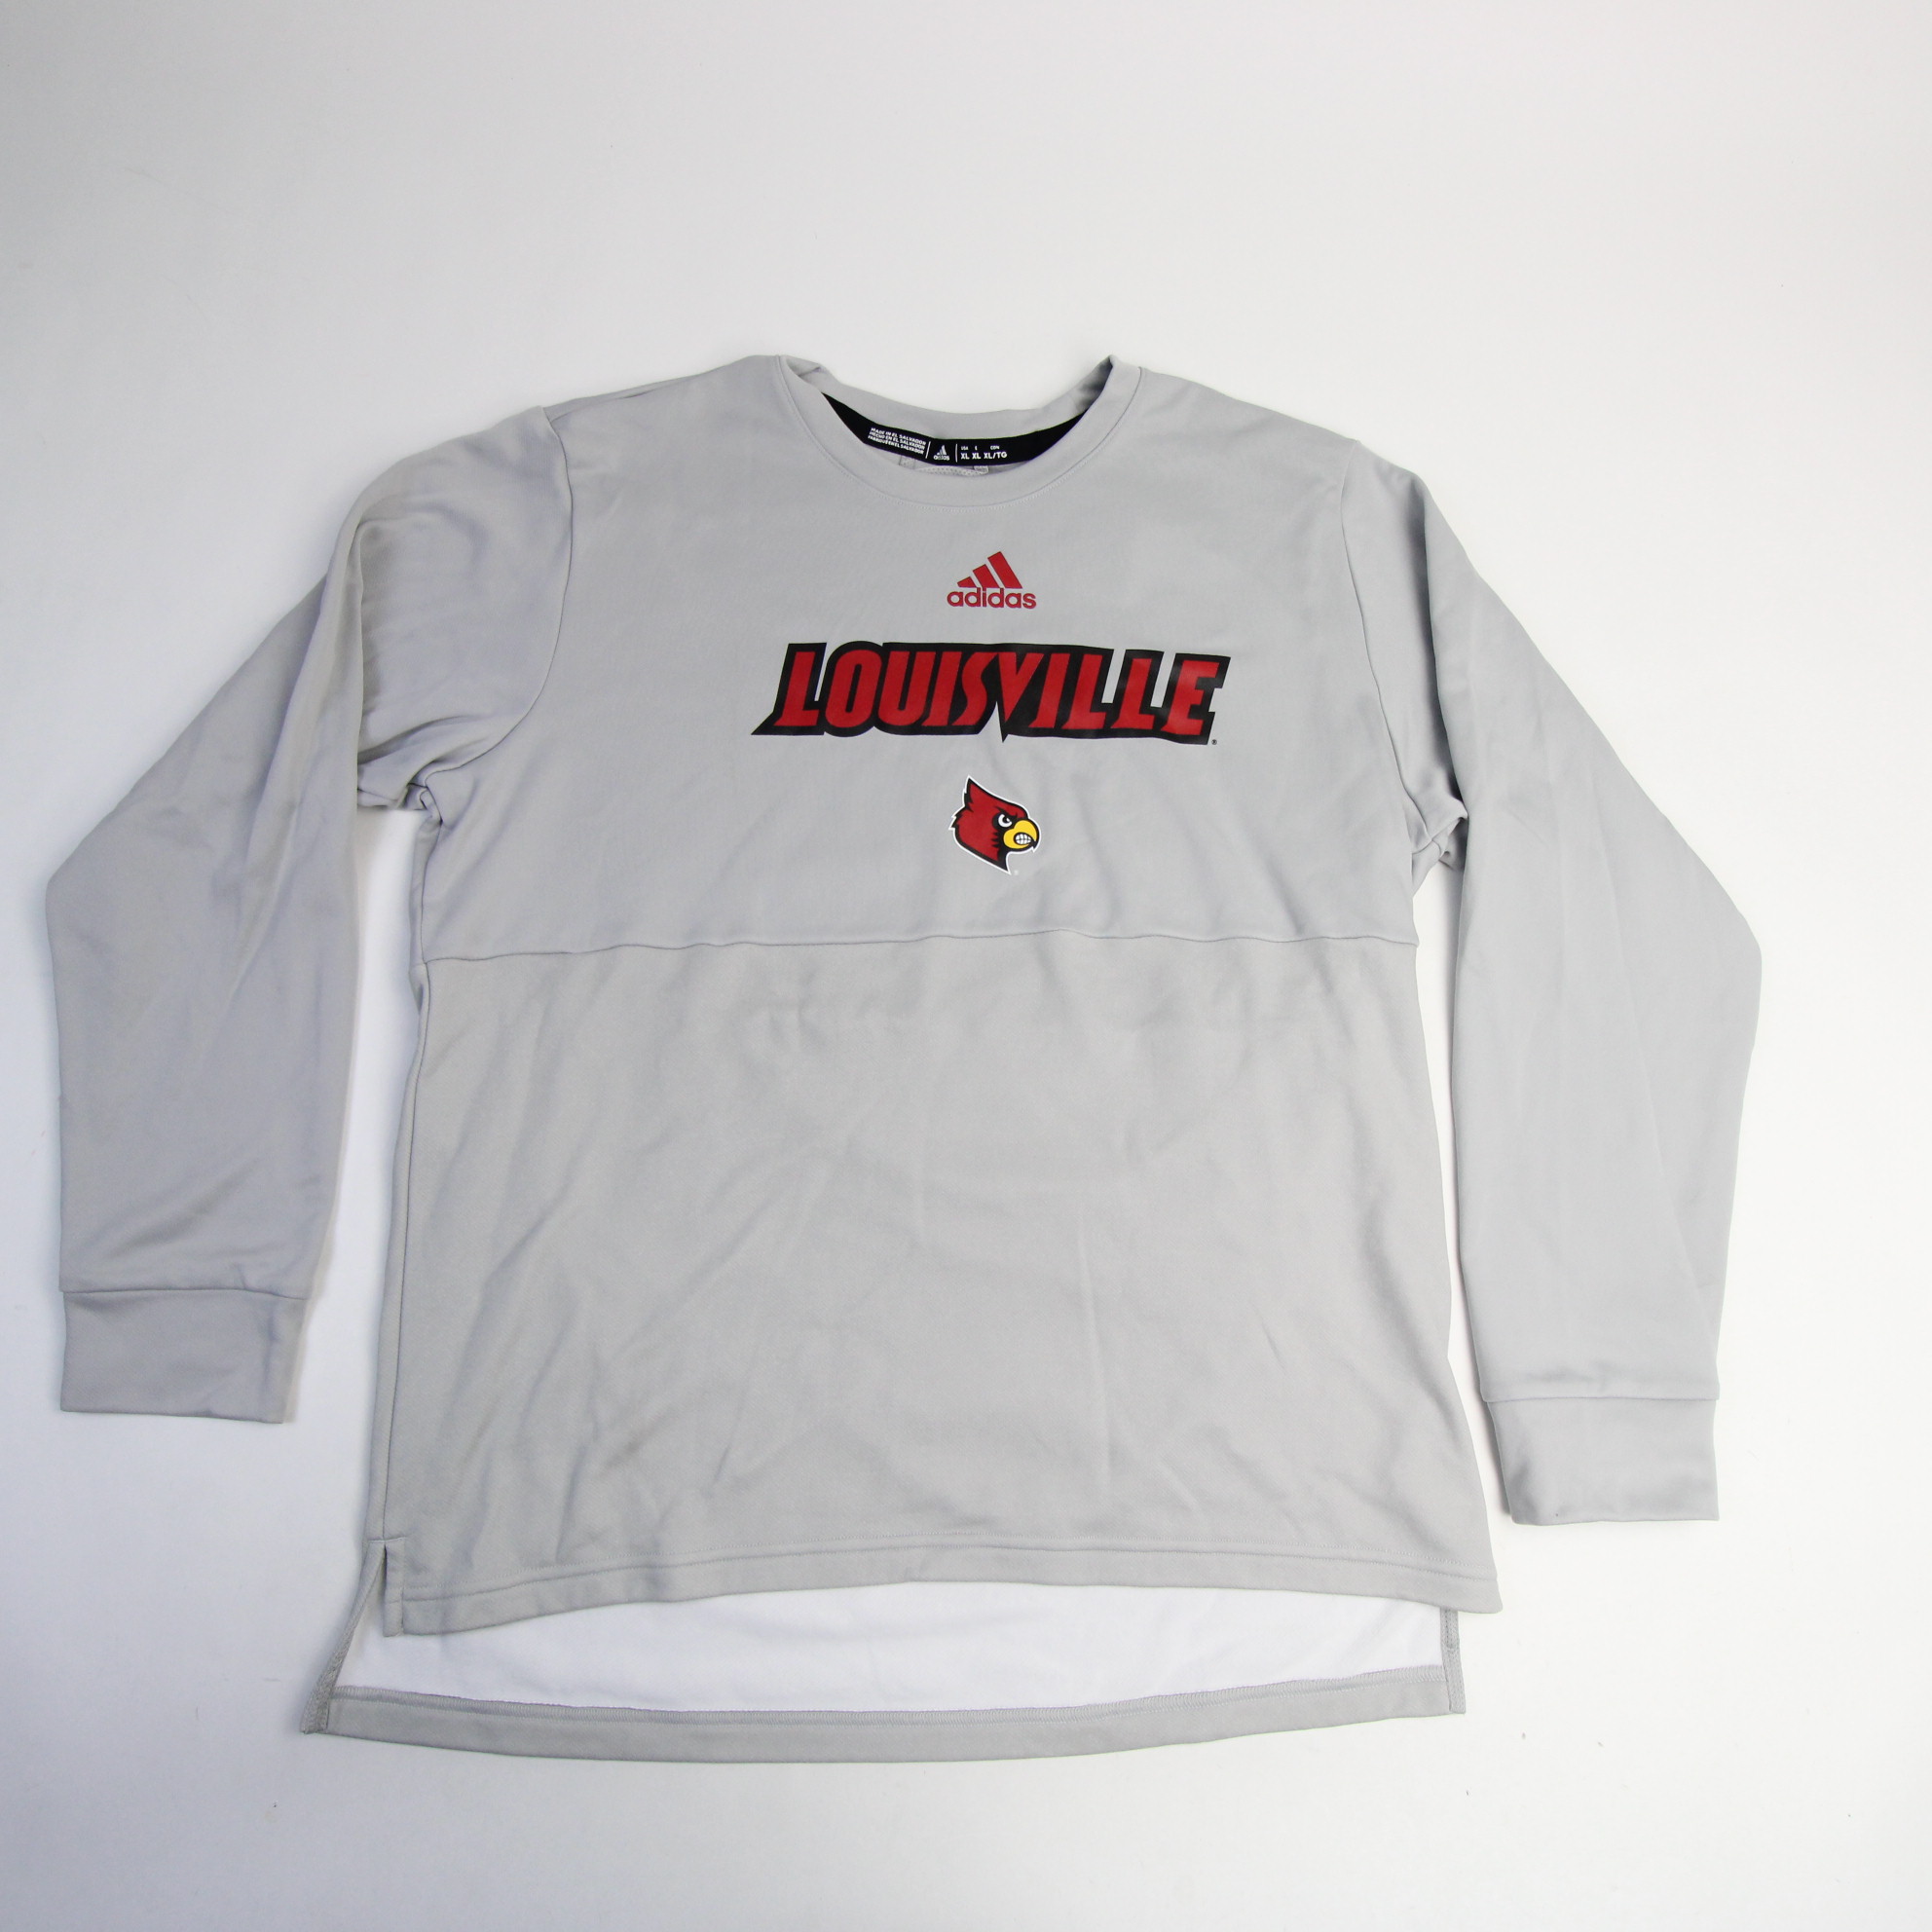 Louisville Cardinals adidas Long Sleeve Shirt Men's Gray New